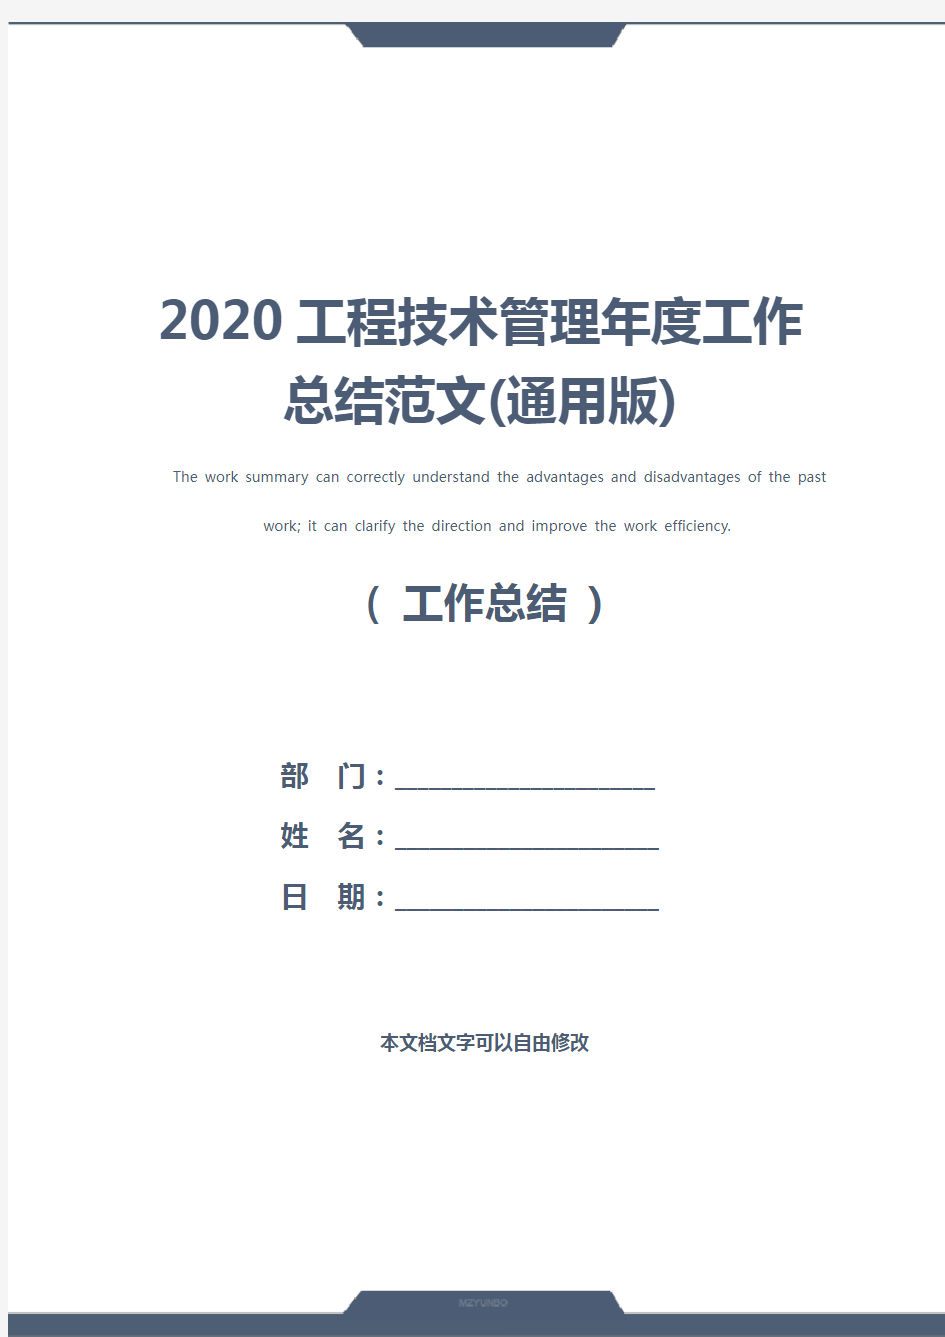 2020工程技术管理年度工作总结范文(通用版)